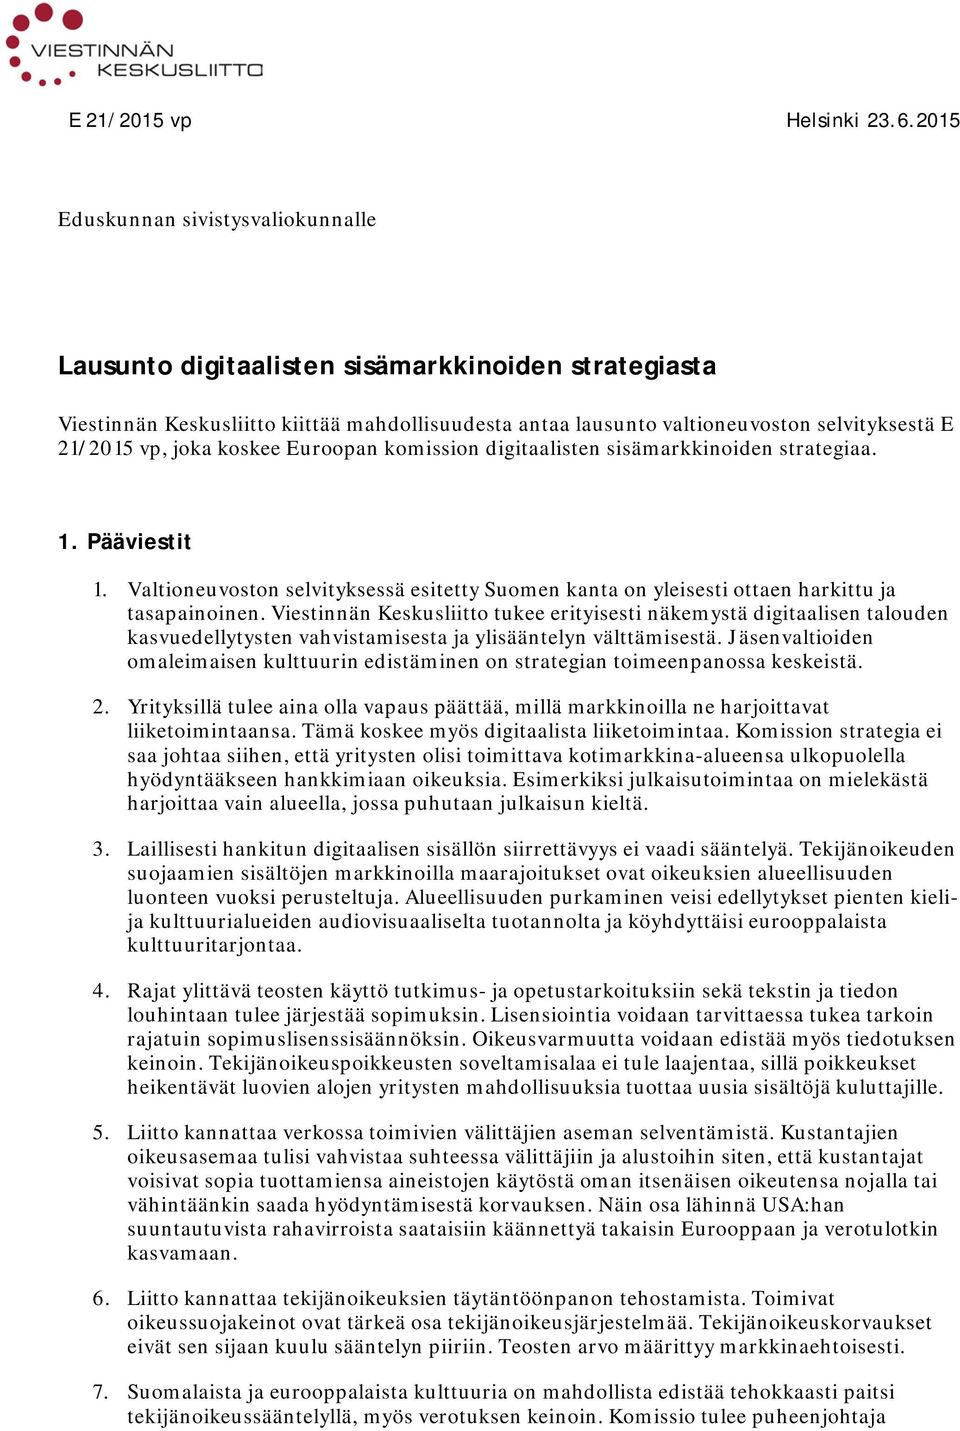 joka koskee Euroopan komission digitaalisten sisämarkkinoiden strategiaa. 1. Pääviestit 1. Valtioneuvoston selvityksessä esitetty Suomen kanta on yleisesti ottaen harkittu ja tasapainoinen.